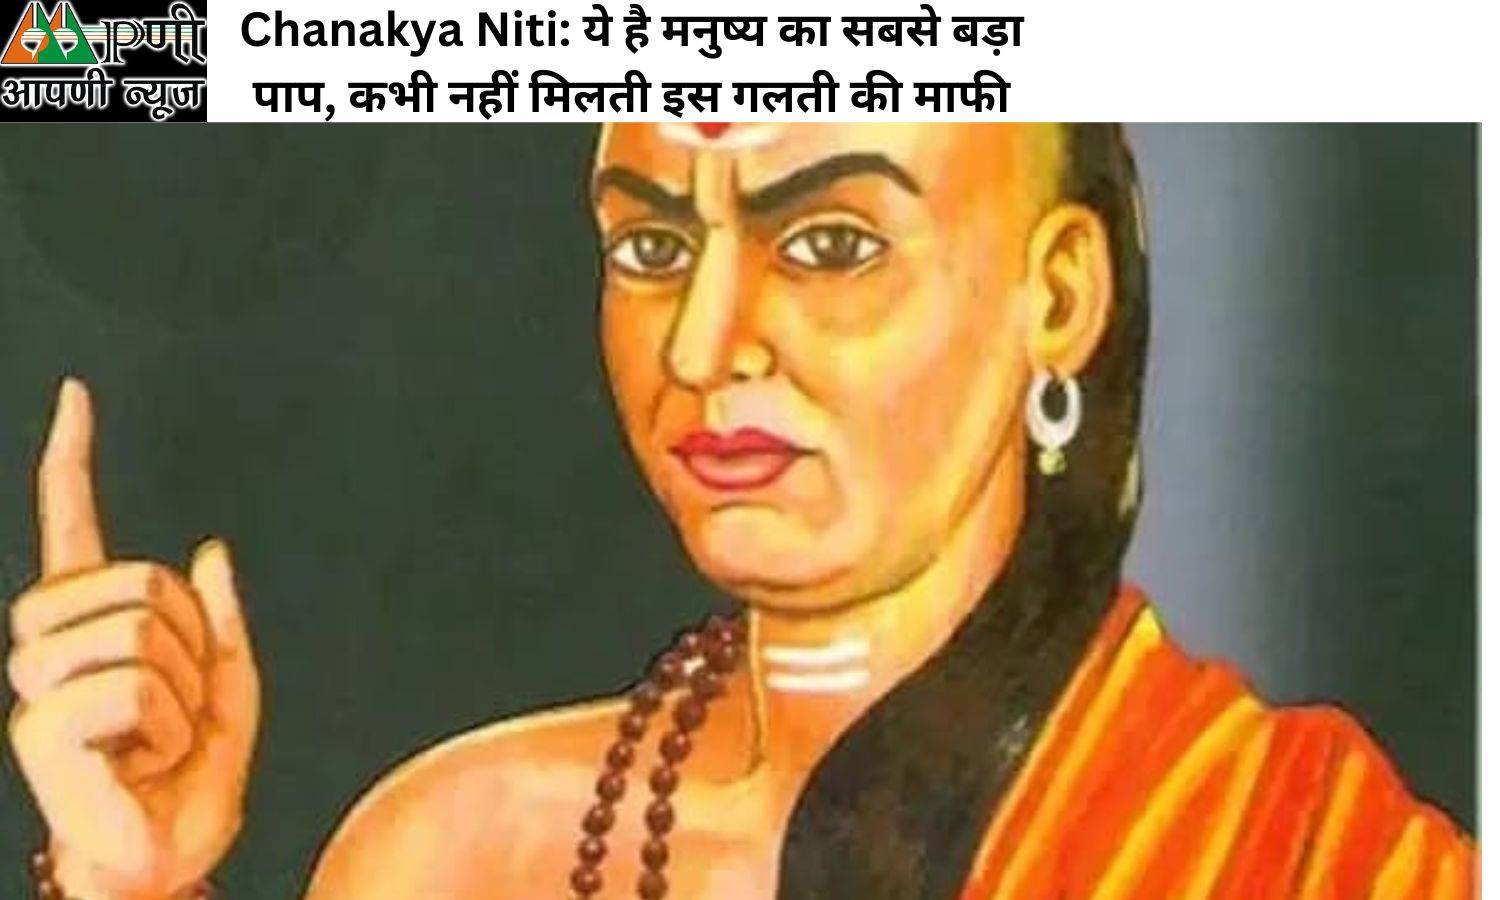 Chanakya Niti: ये है मनुष्य का सबसे बड़ा पाप, कभी नहीं मिलती इस गलती की माफी